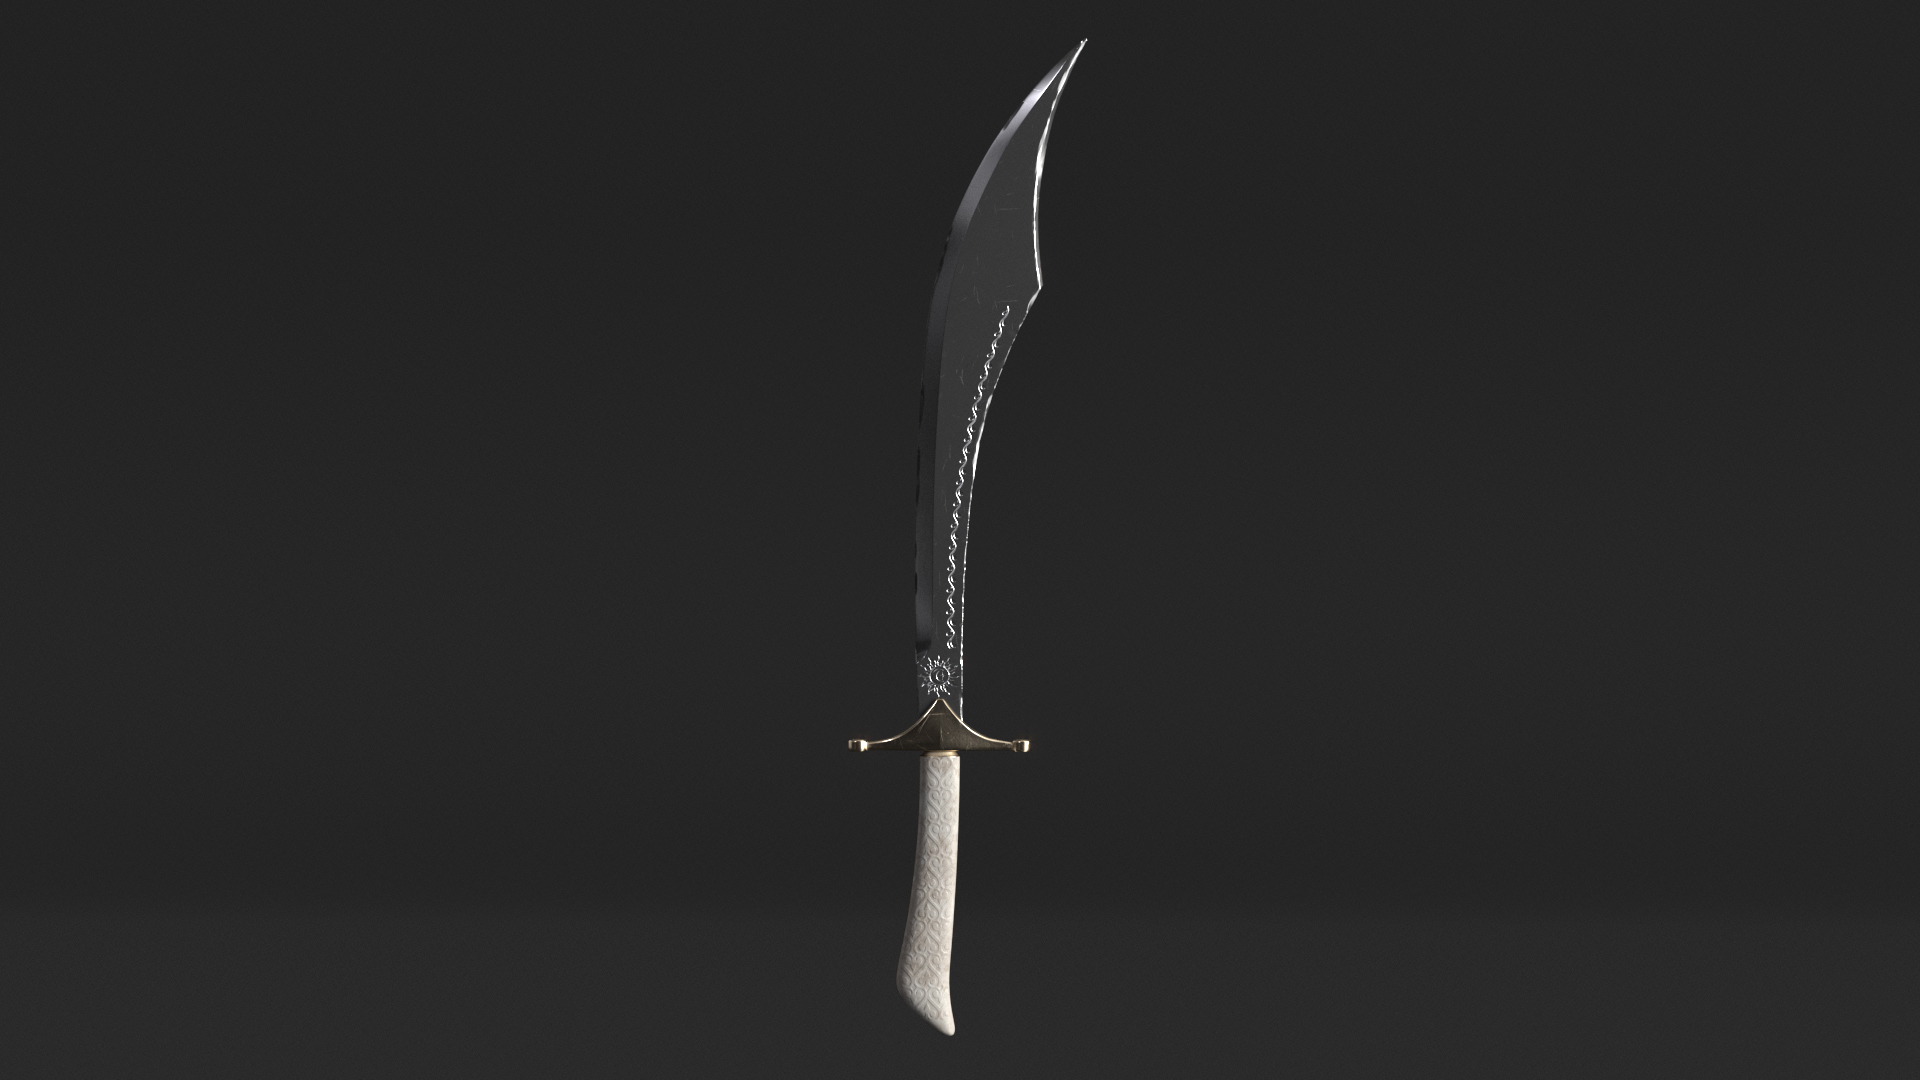 Scimitar Bundle, Scimitar Sword